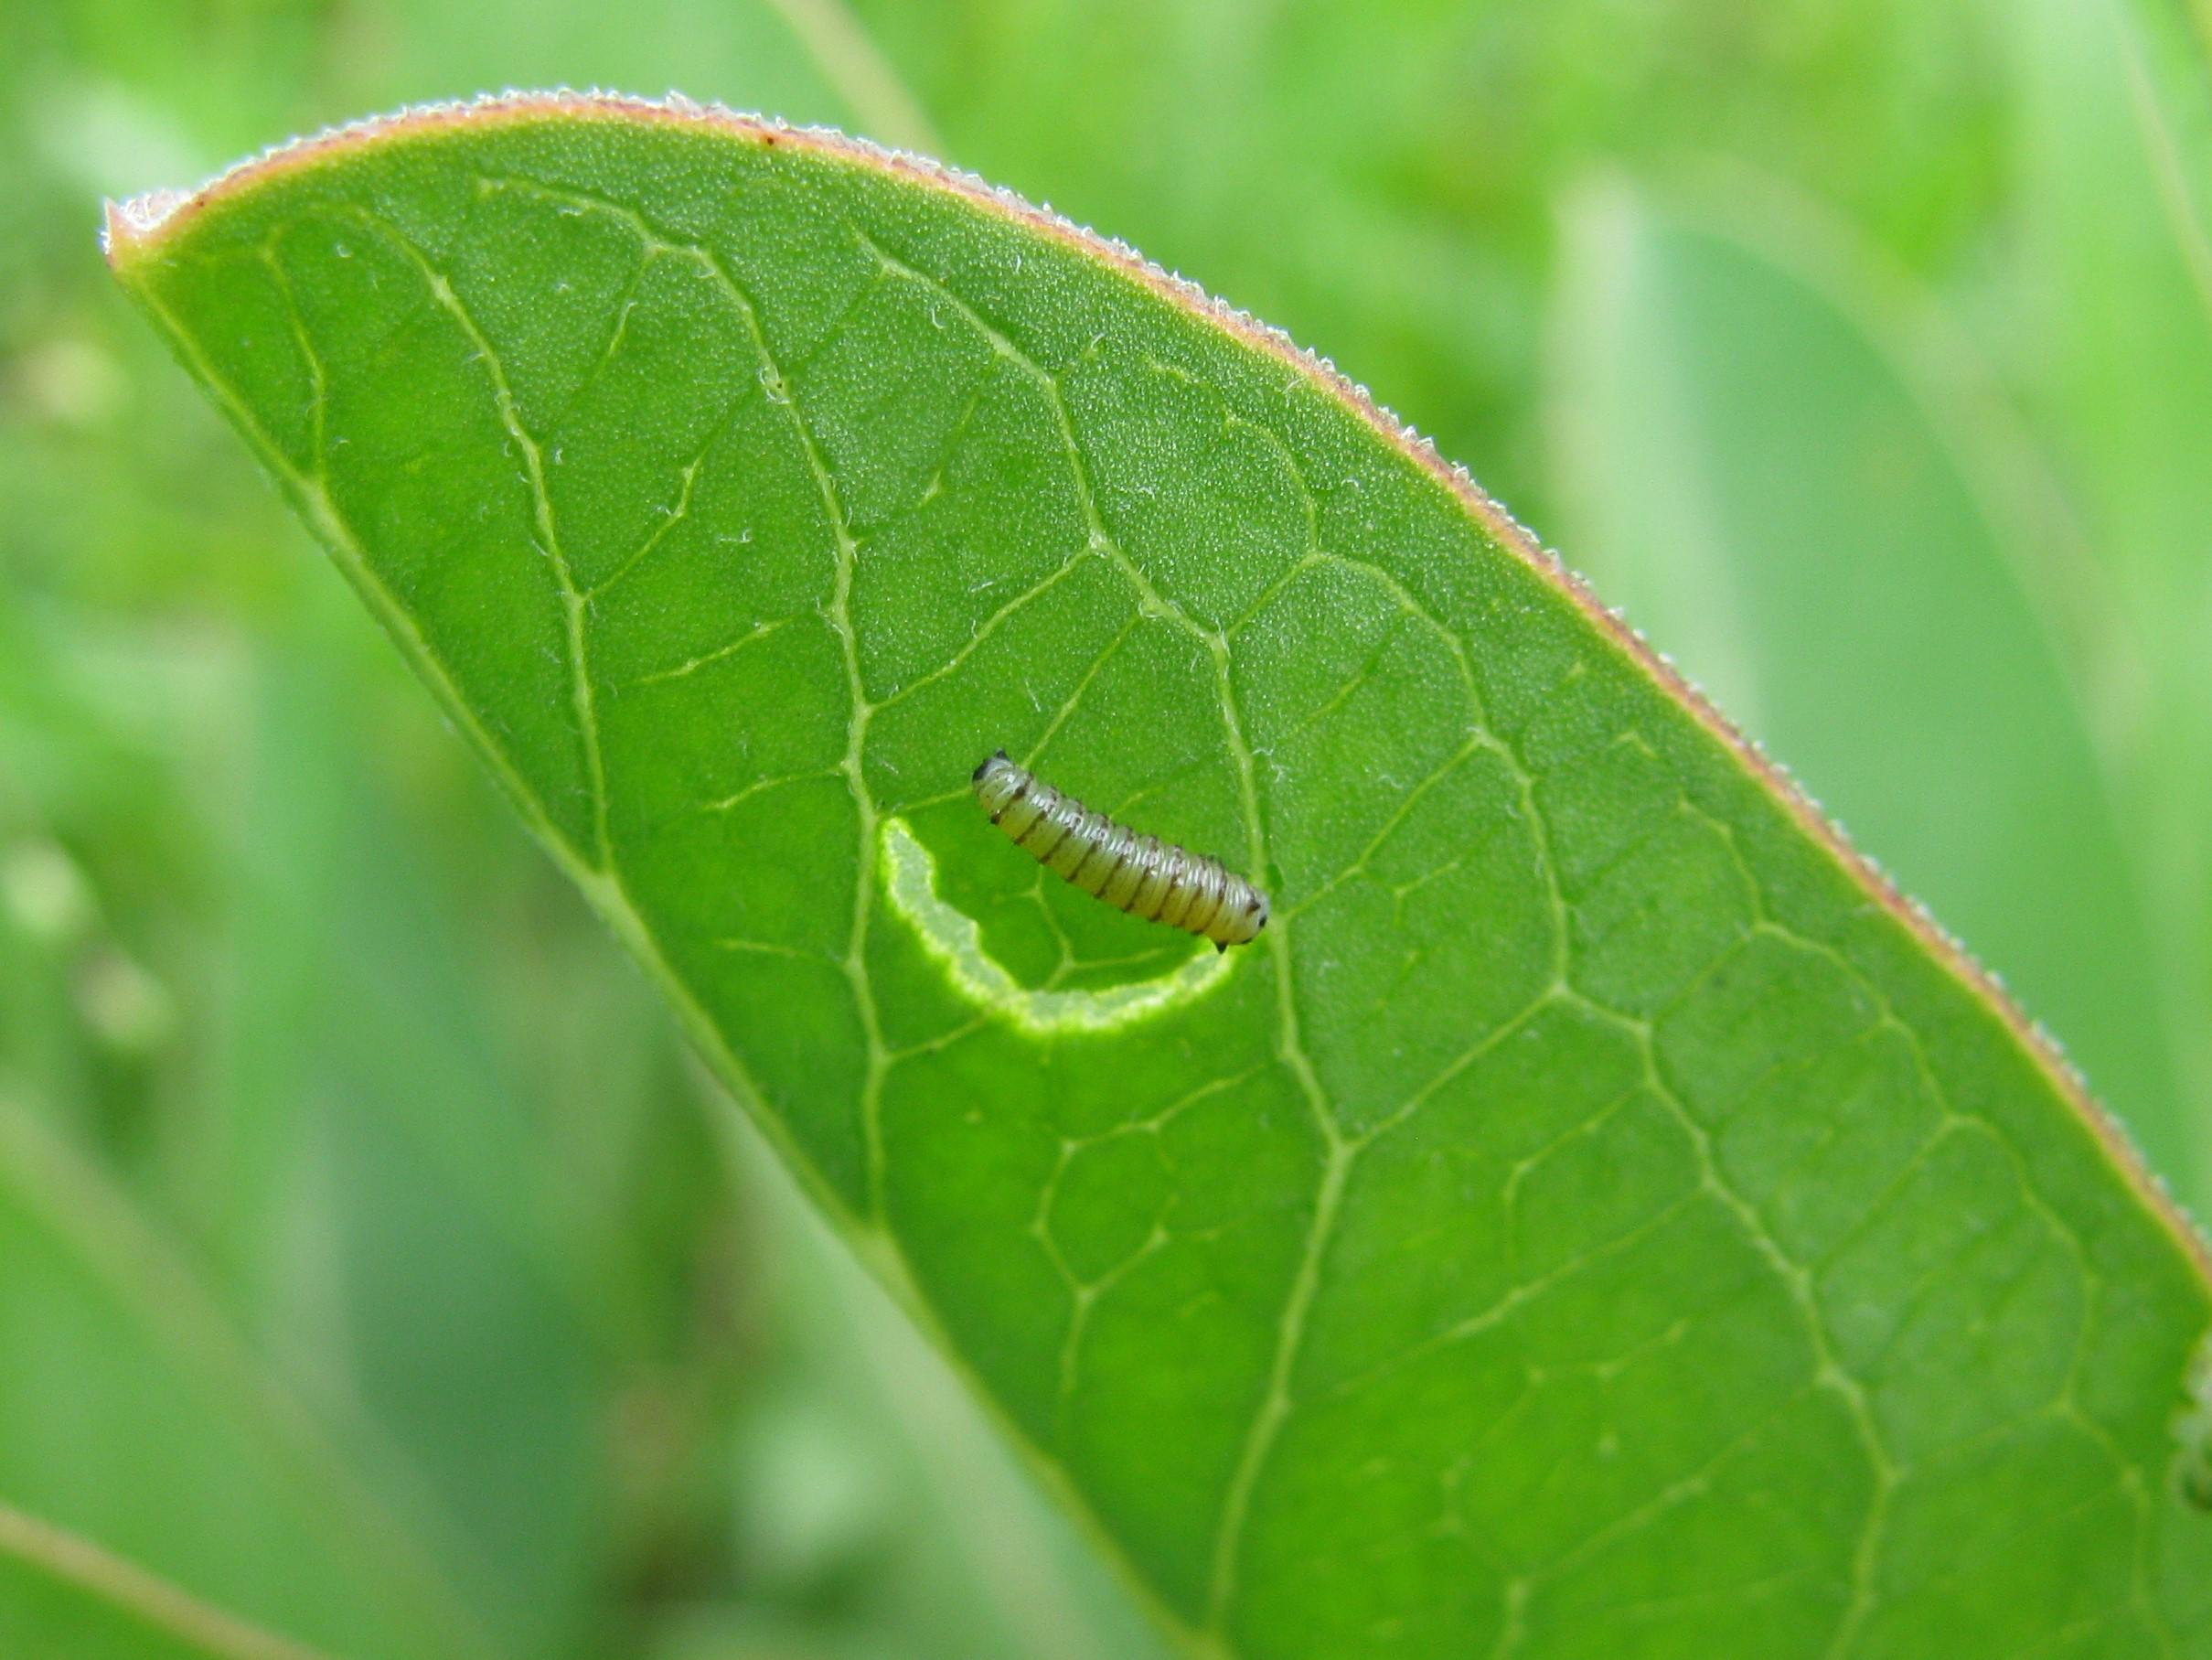 Monarch Butterfly Caterpillar Growing